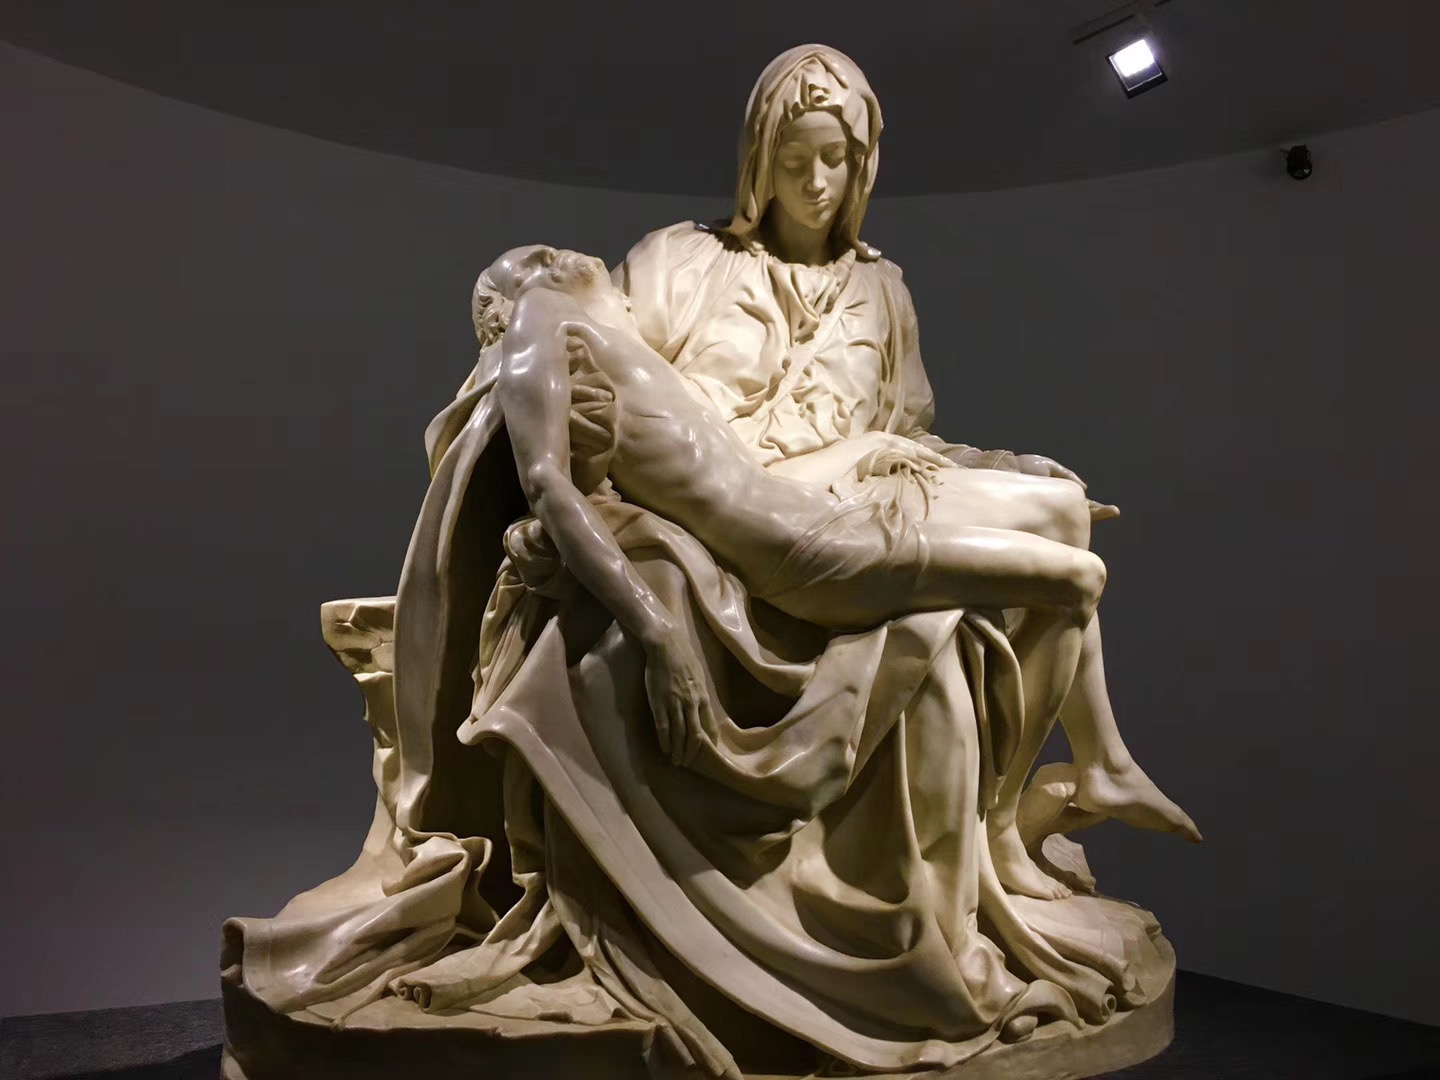 米开朗琪罗的“哀悼基督”，展览中最喜欢的作品之一，可惜只是复制品